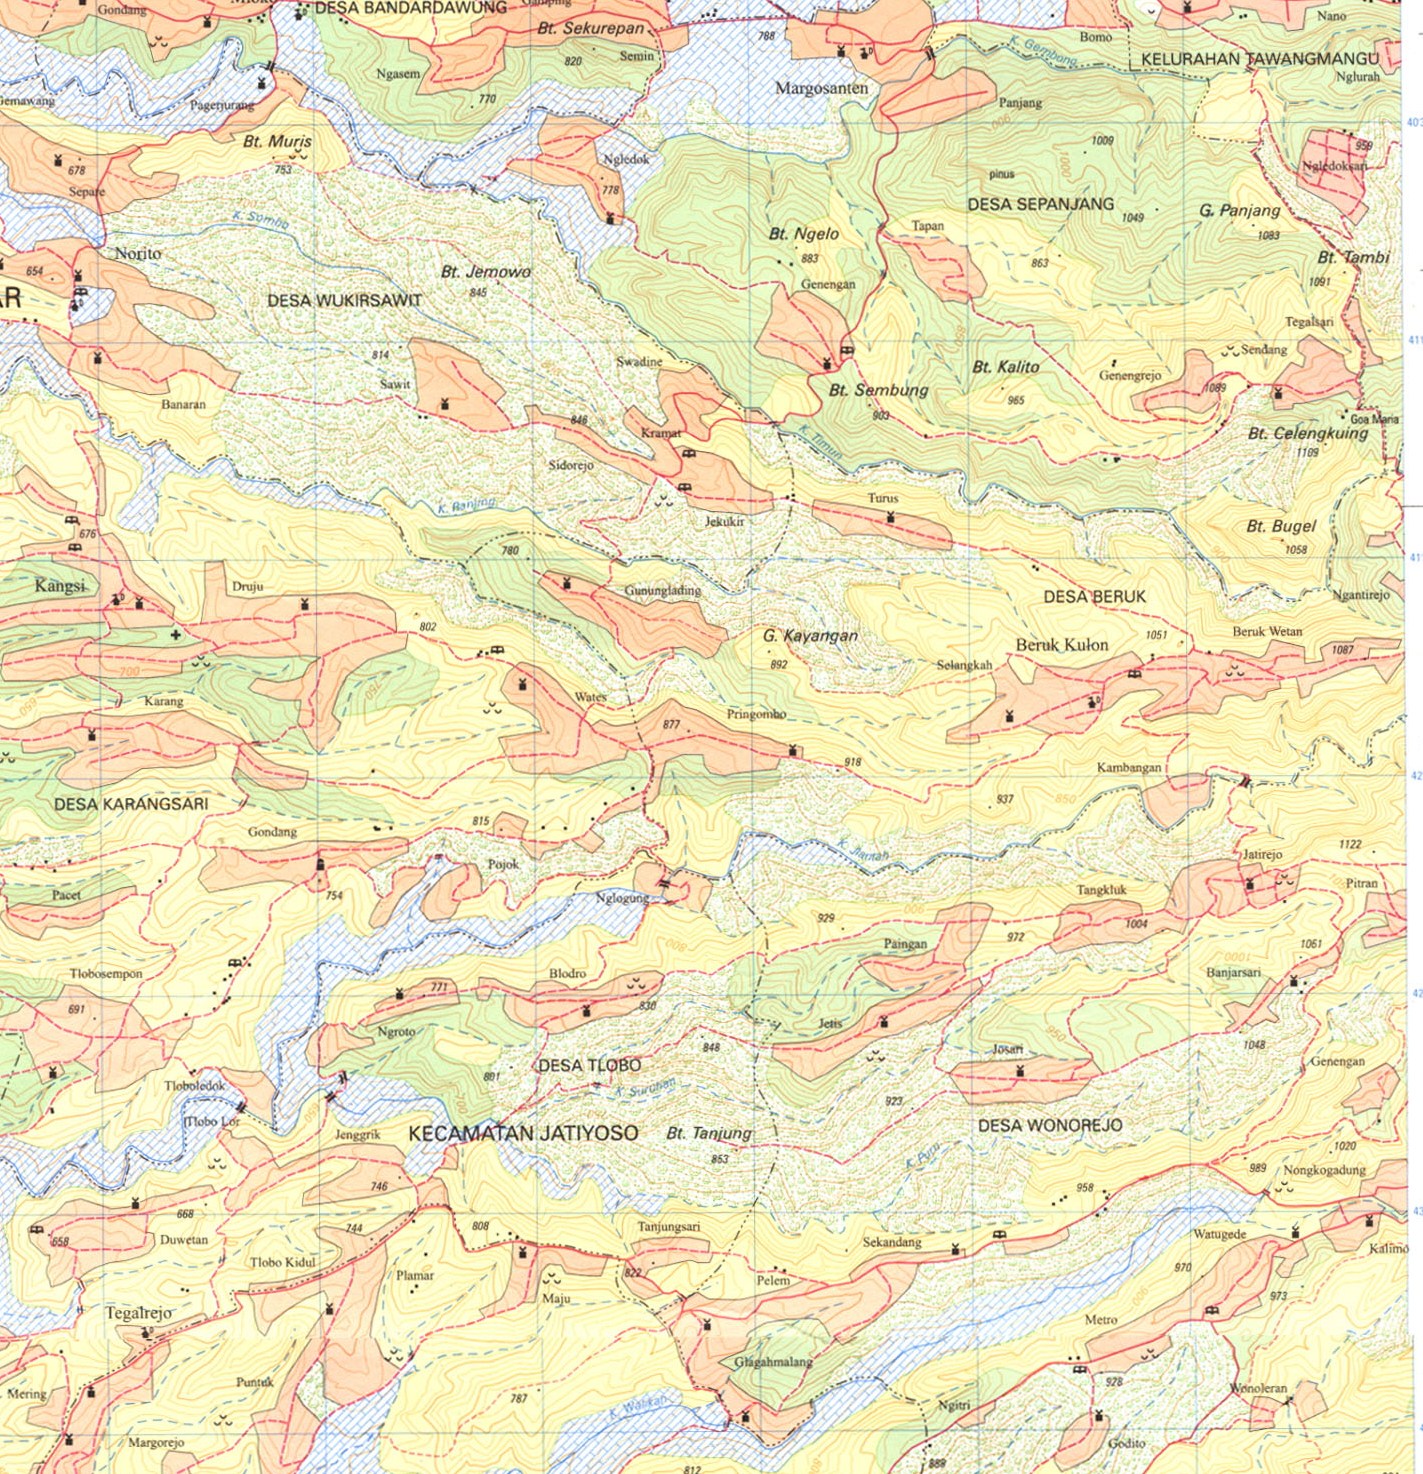 Peta Kabupaten Karanganyar Lengkap Gambar Hd Dan